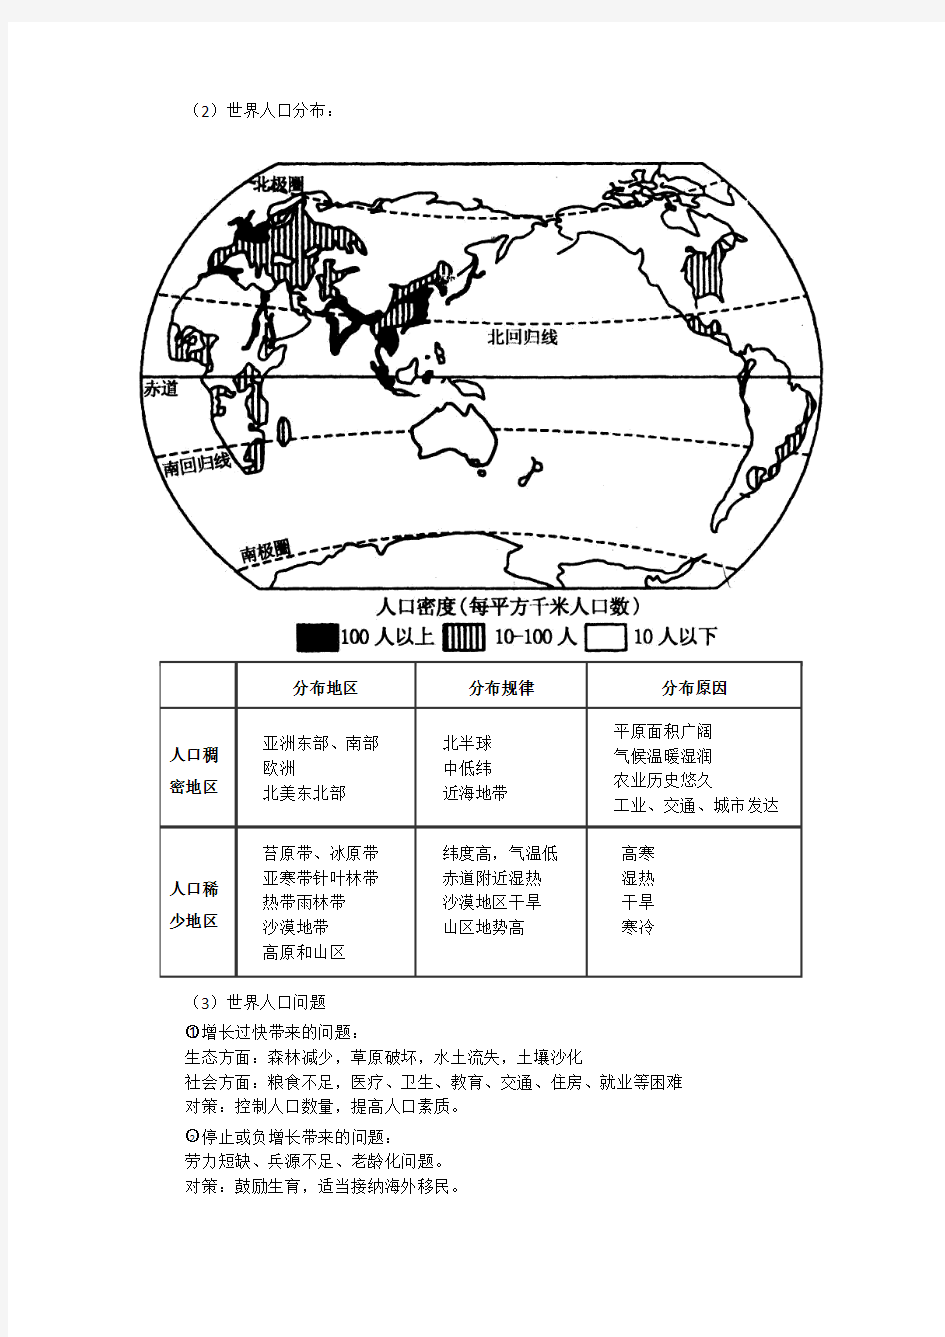 世界地理概况(世界的自然资源等)